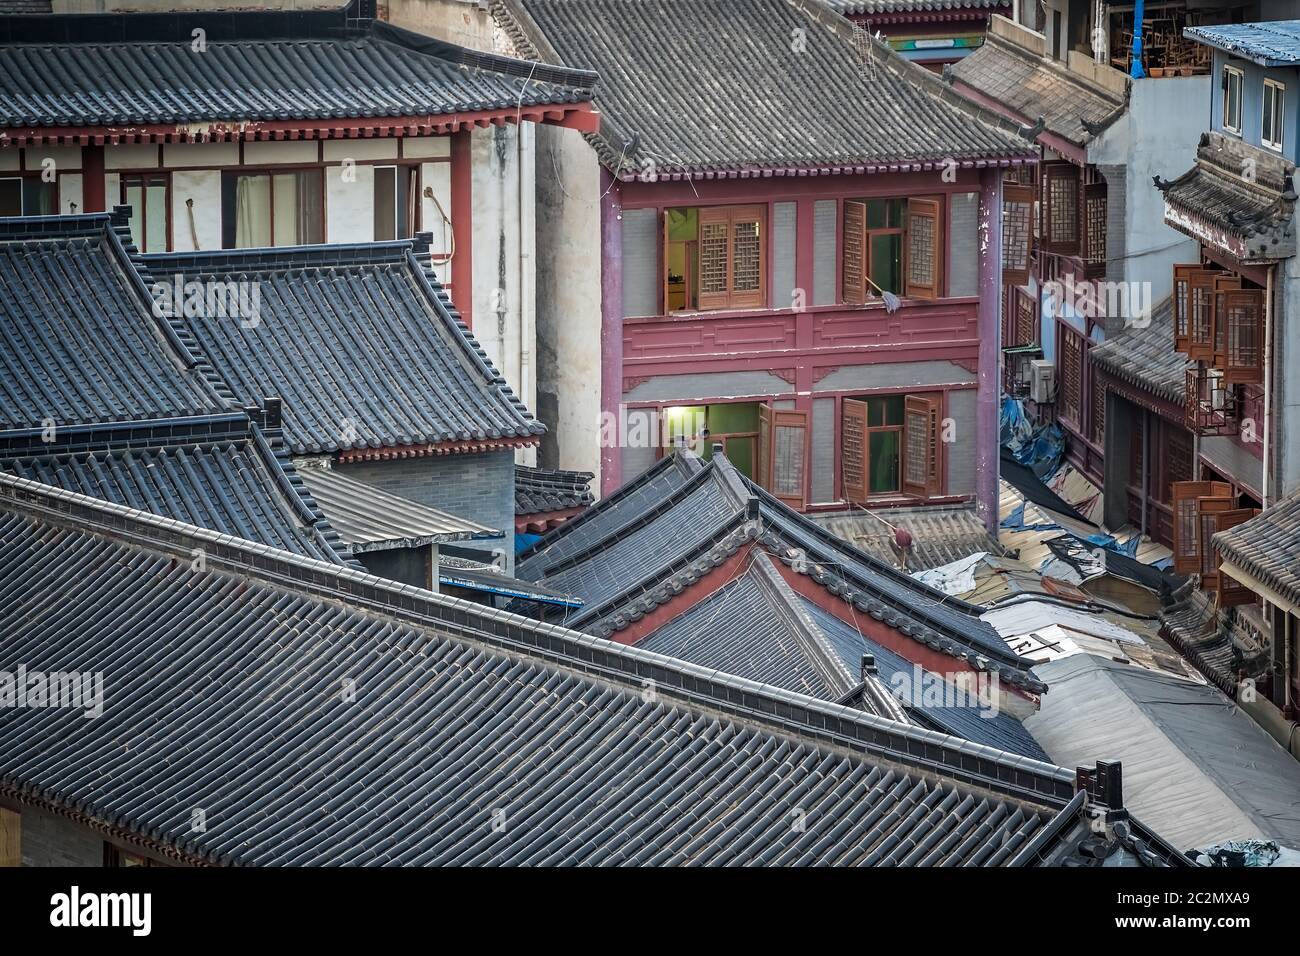 Toits traditionnels de vieux bâtiments dans le centre de la ville de Xian, province de Shaaxi, Chine centrale Banque D'Images